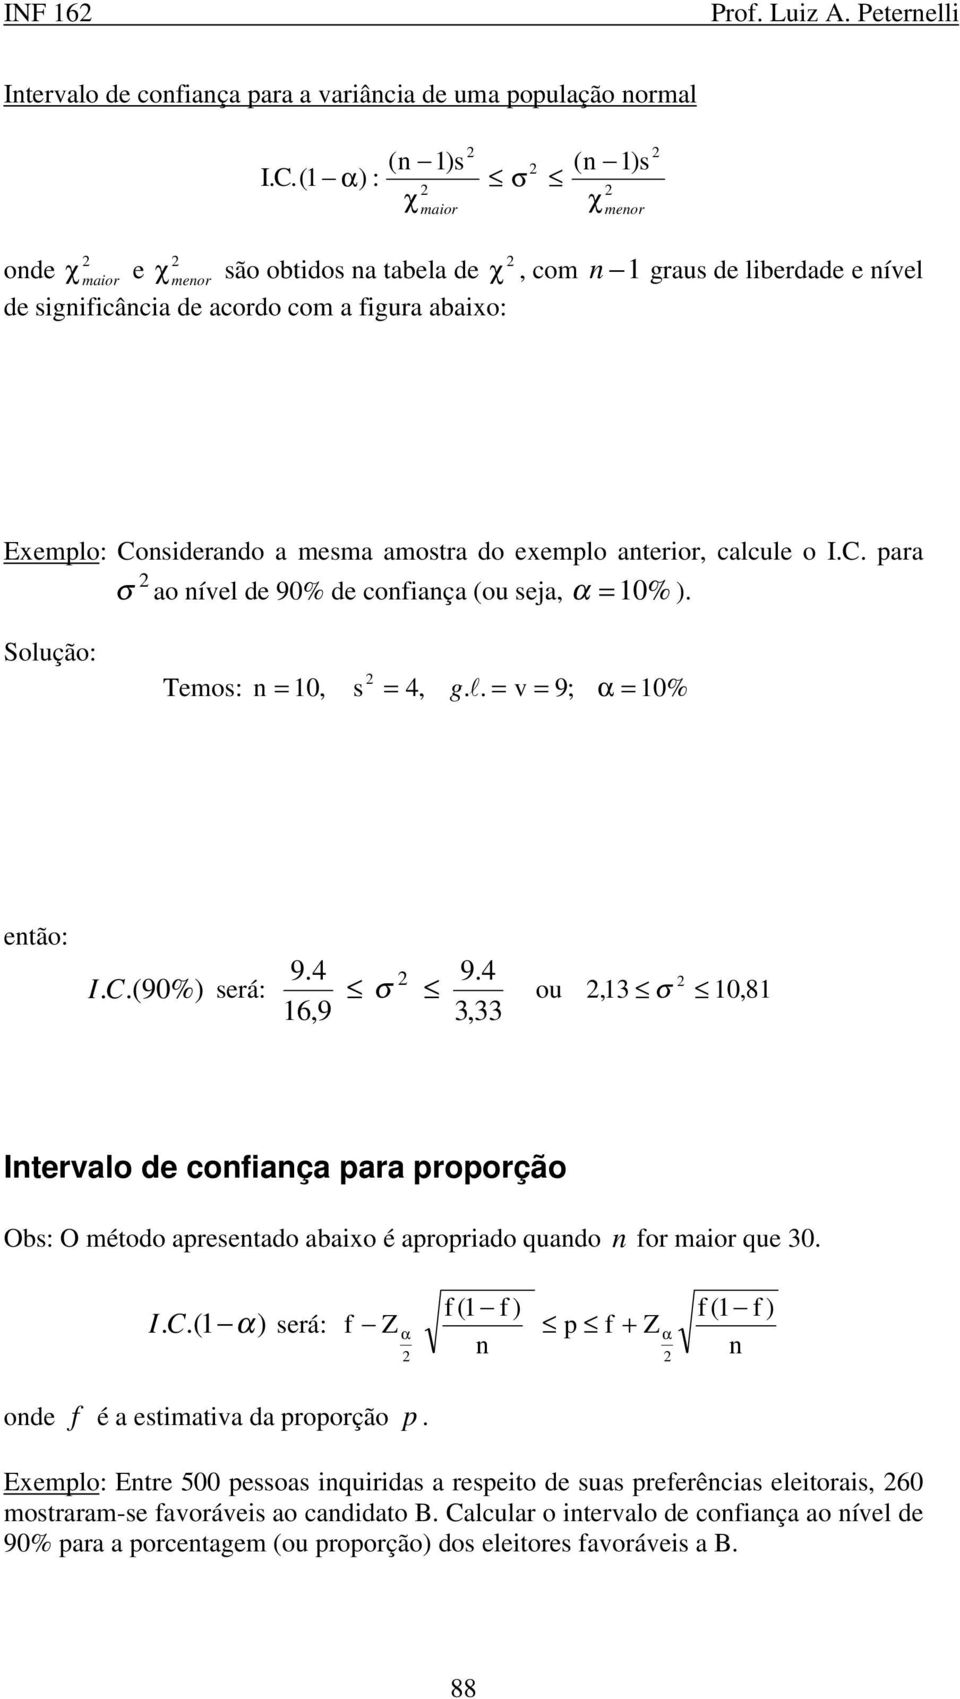 aterior, calcule o I.C. para σ ao ível de 90% de cofiaça (ou eja, α = 10% ). Solução: Temo: = 10, = 4, g.!. = v = 9; α = 10% etão: I.C.(90%) erá: 9.4 9.